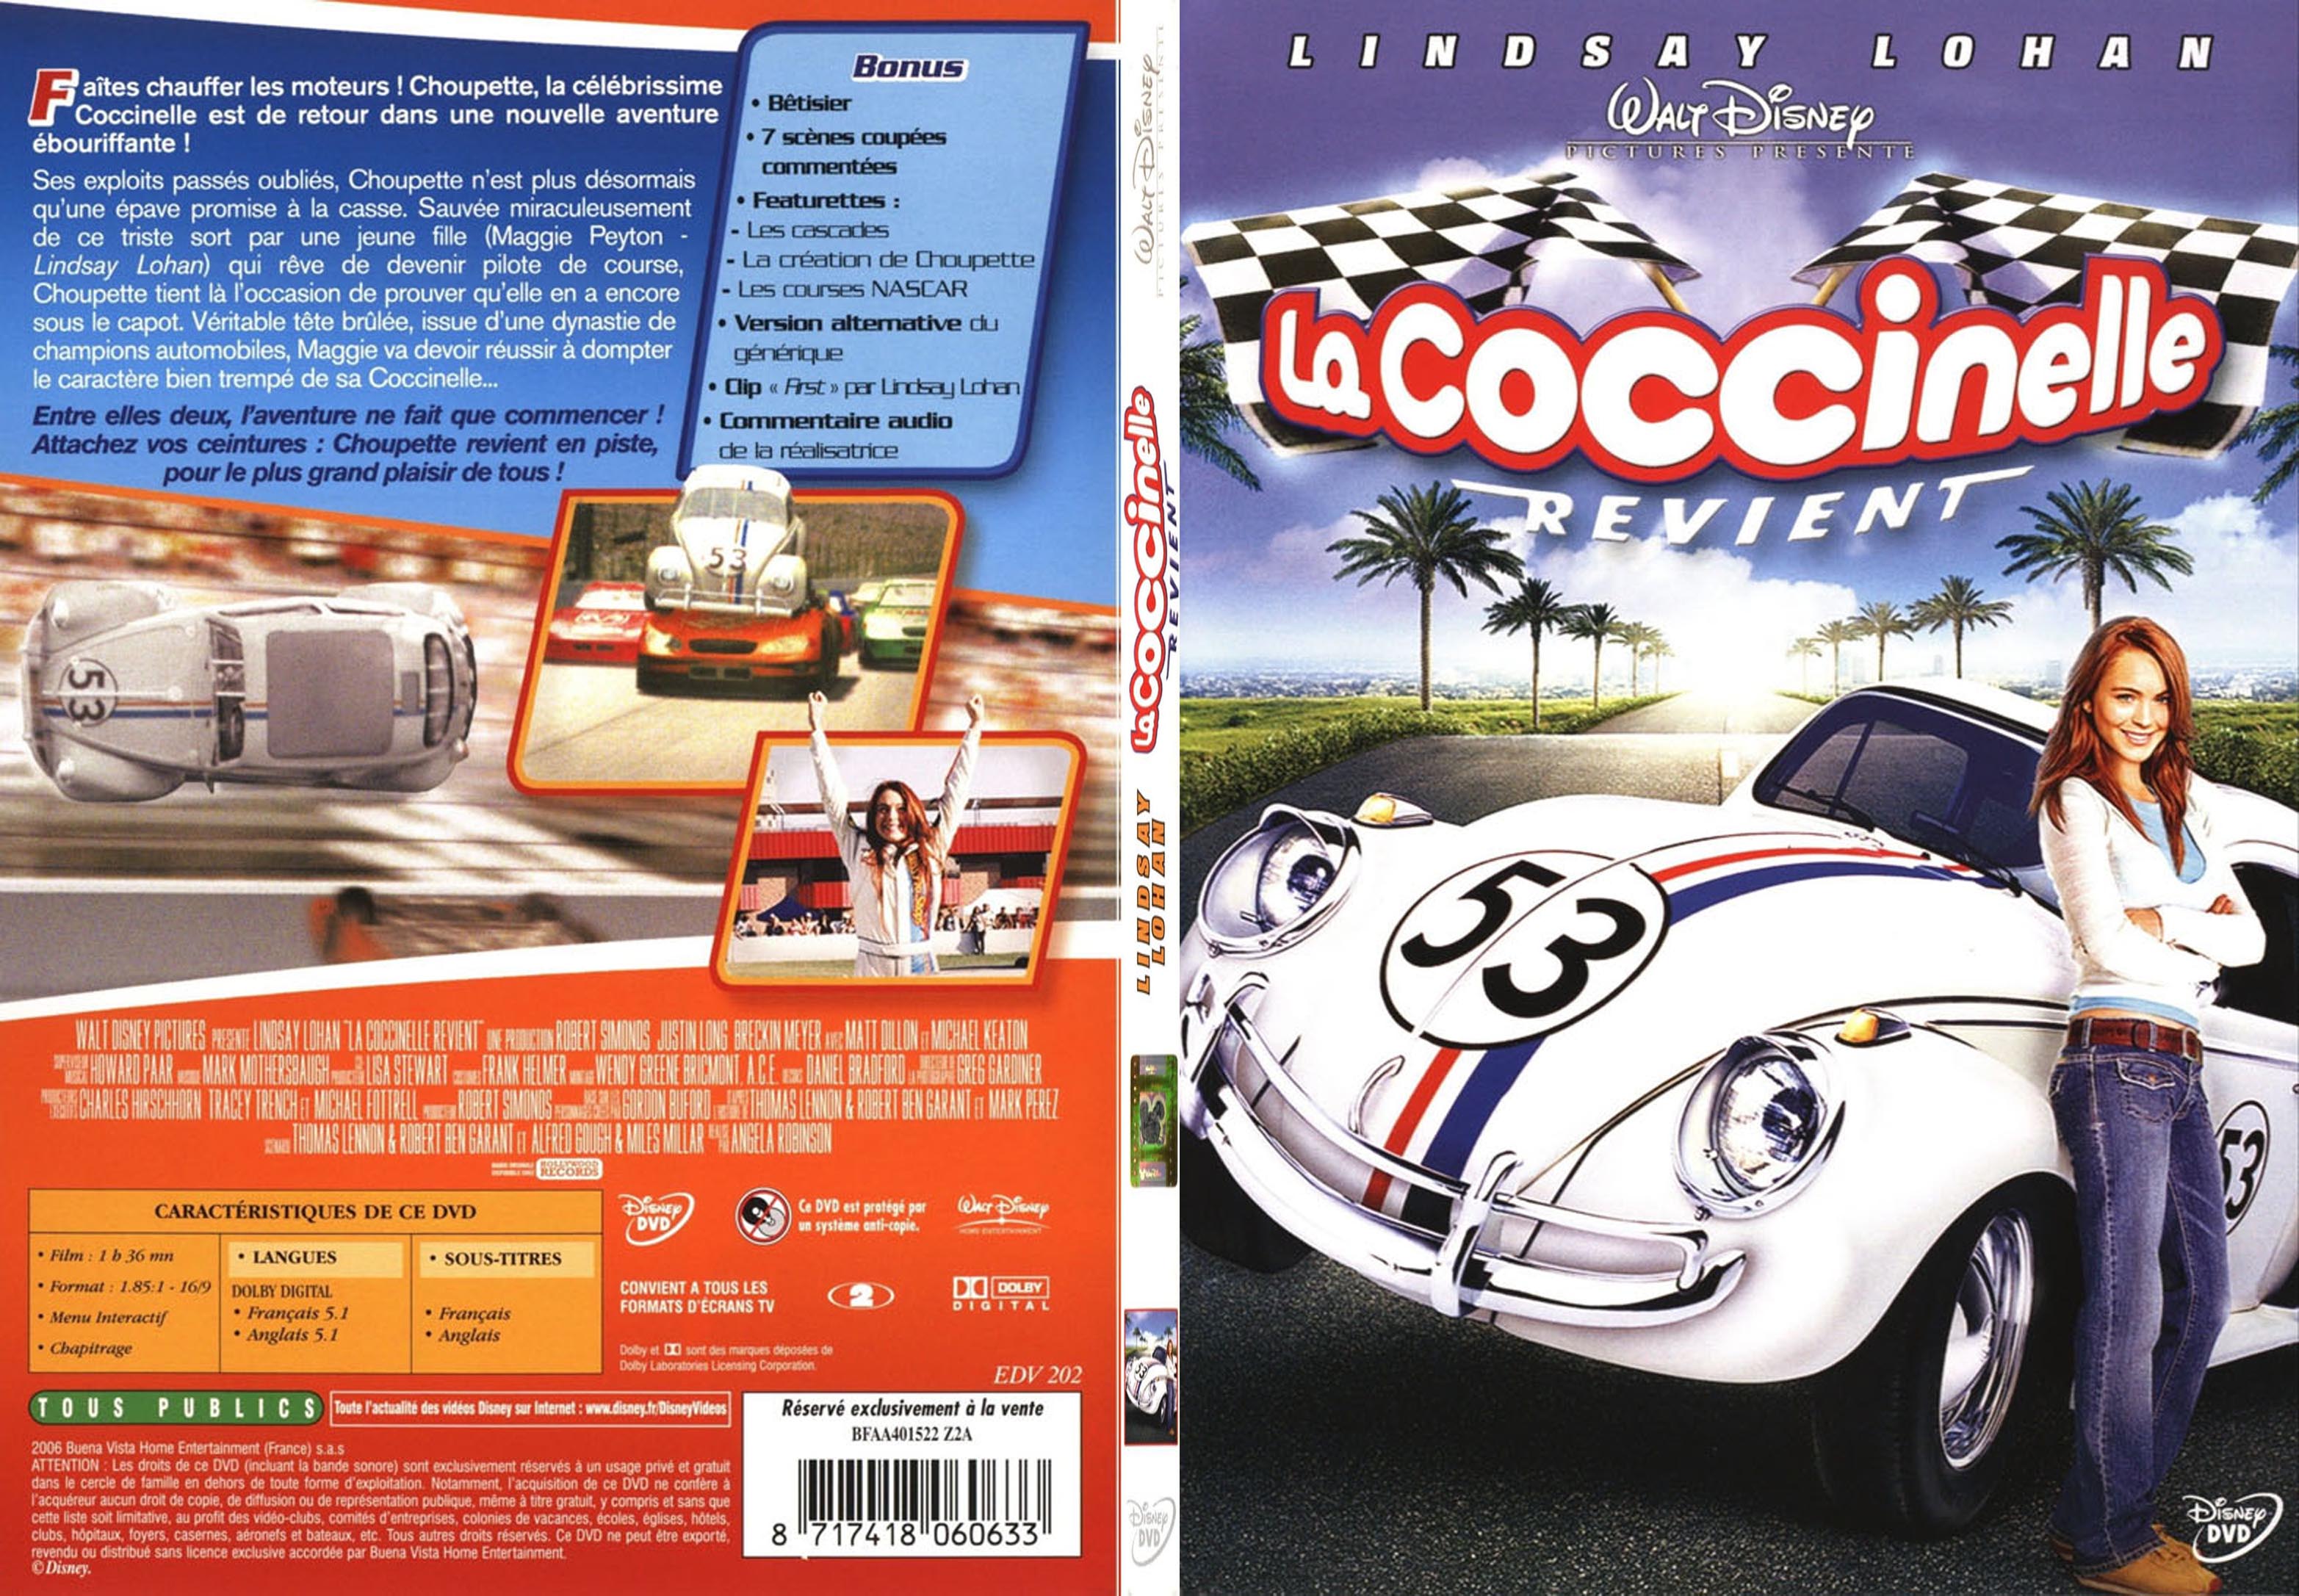 Jaquette DVD La Coccinelle revient - SLIM v2